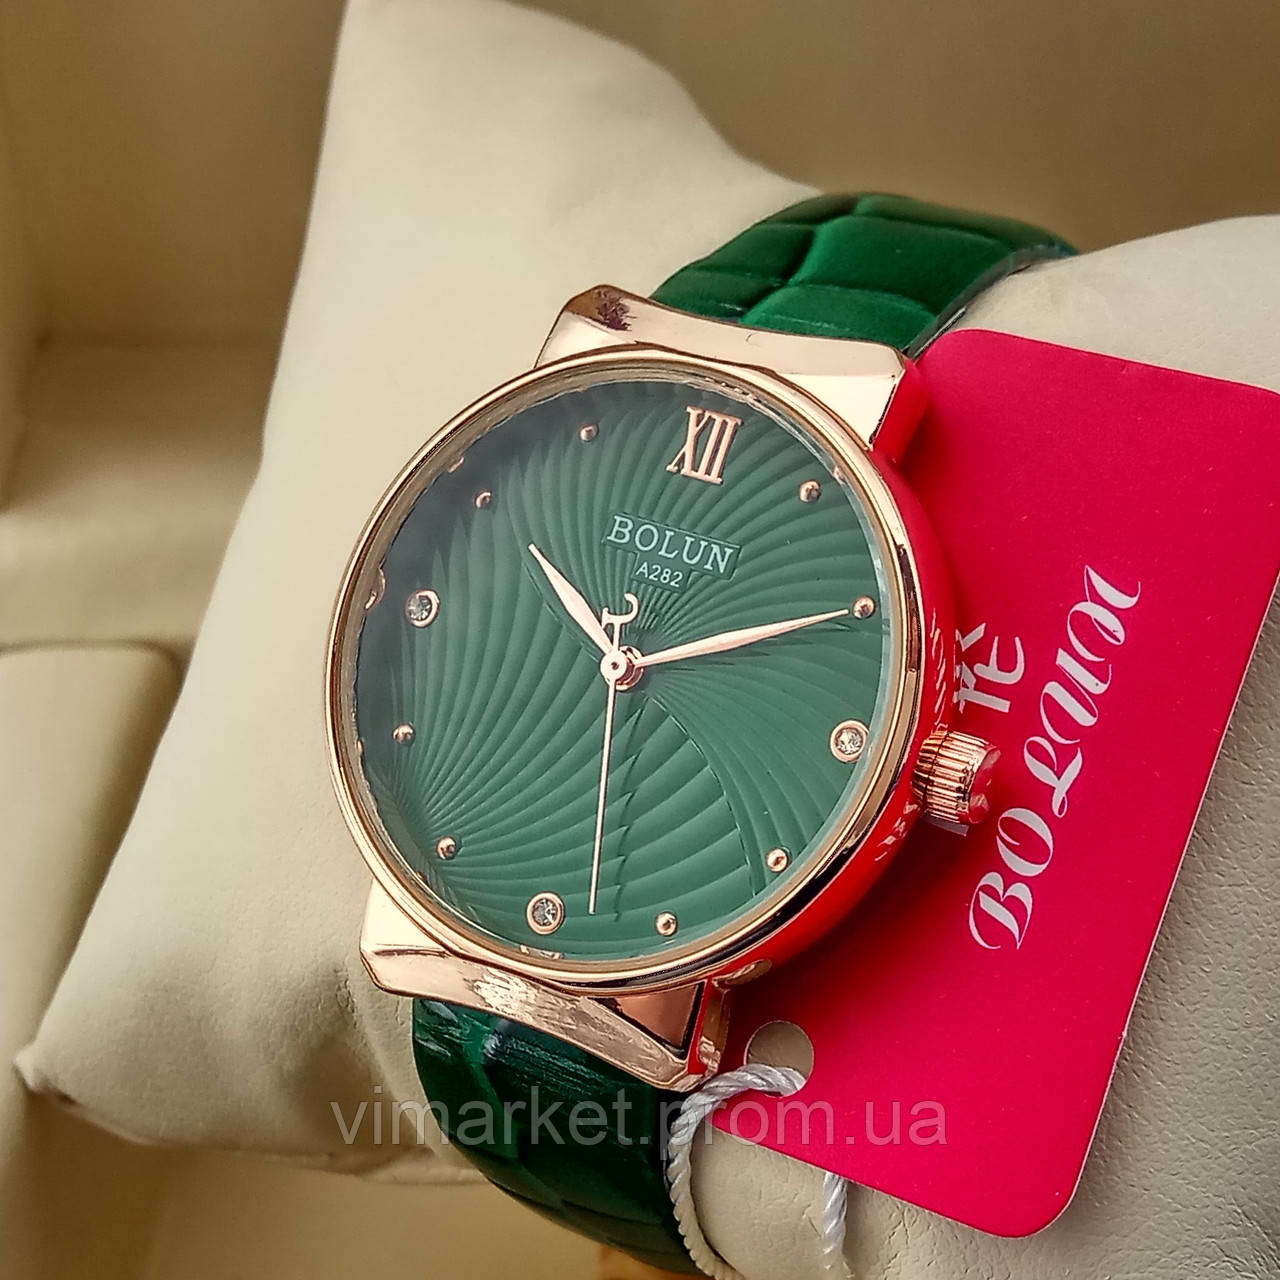 Жіночі кварцові наручні годинники Dior B198-2 срібного кольору рожевий циферблат з датою металевий браслет